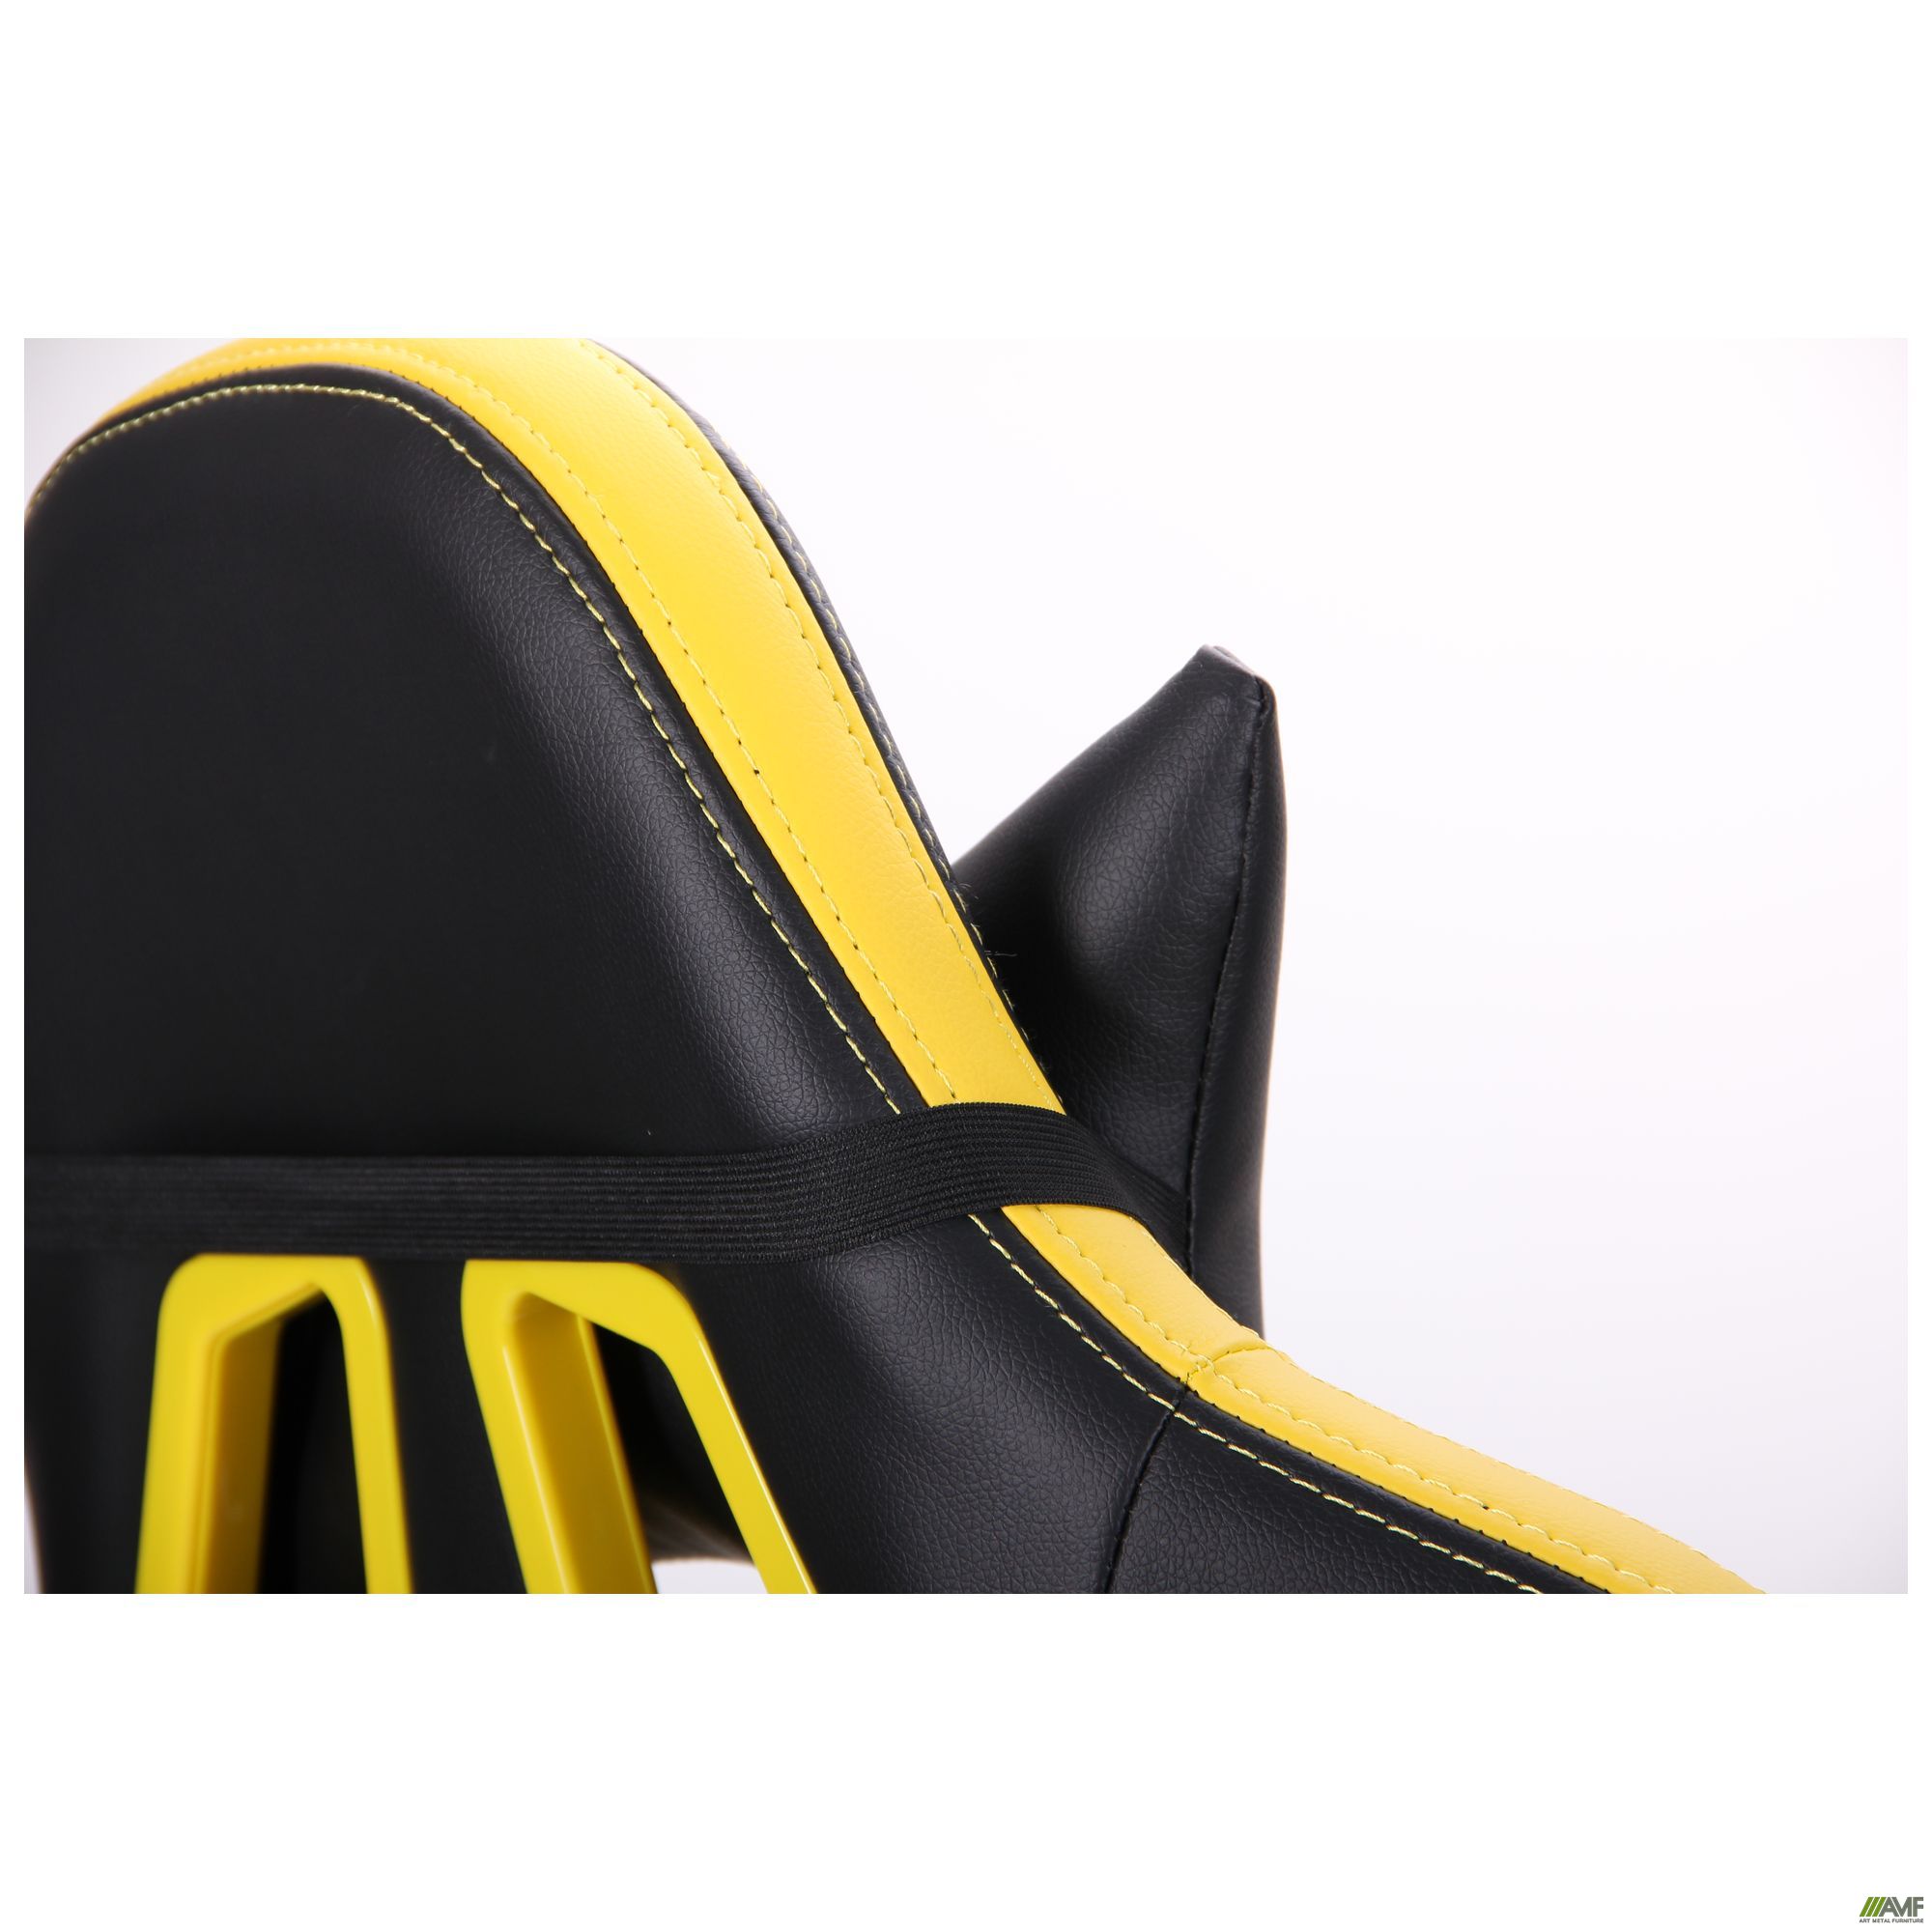 Фото 14 - Кресло VR Racer BattleBee черный/желтый 